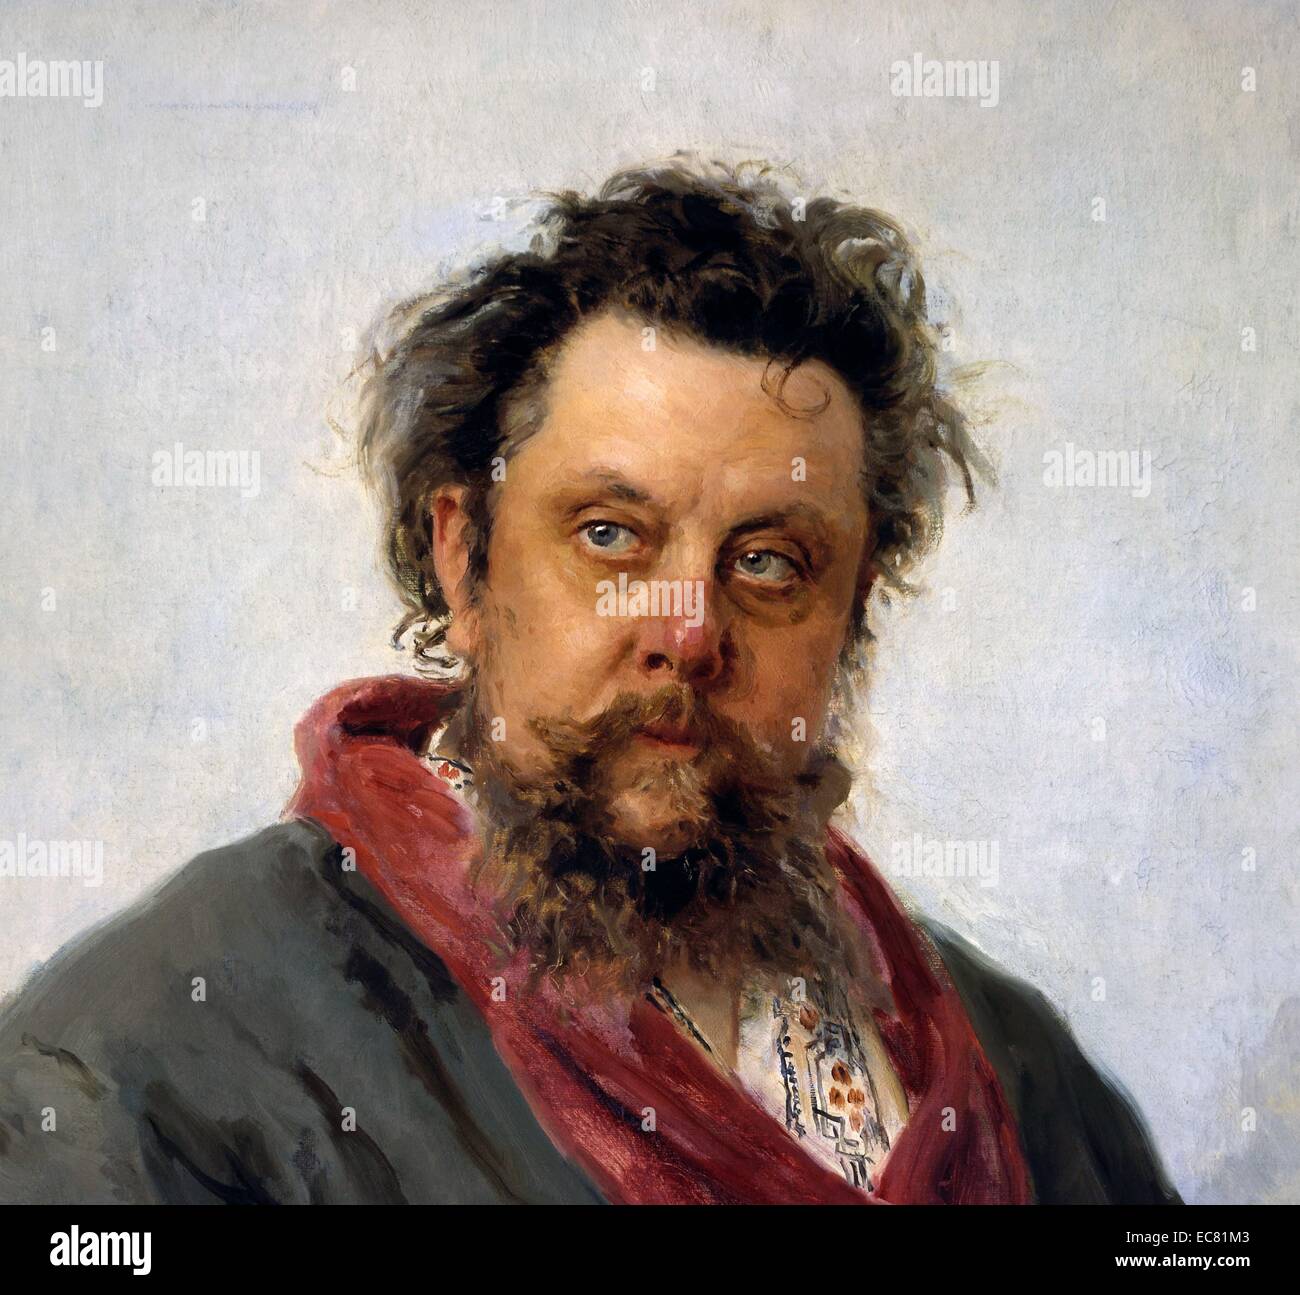 Retrato de un modesto Petrovich Mussorgsky (1839-1881), compositor ruso, uno del grupo conocido como "Los Cinco". Con fecha de 1865. Foto de stock